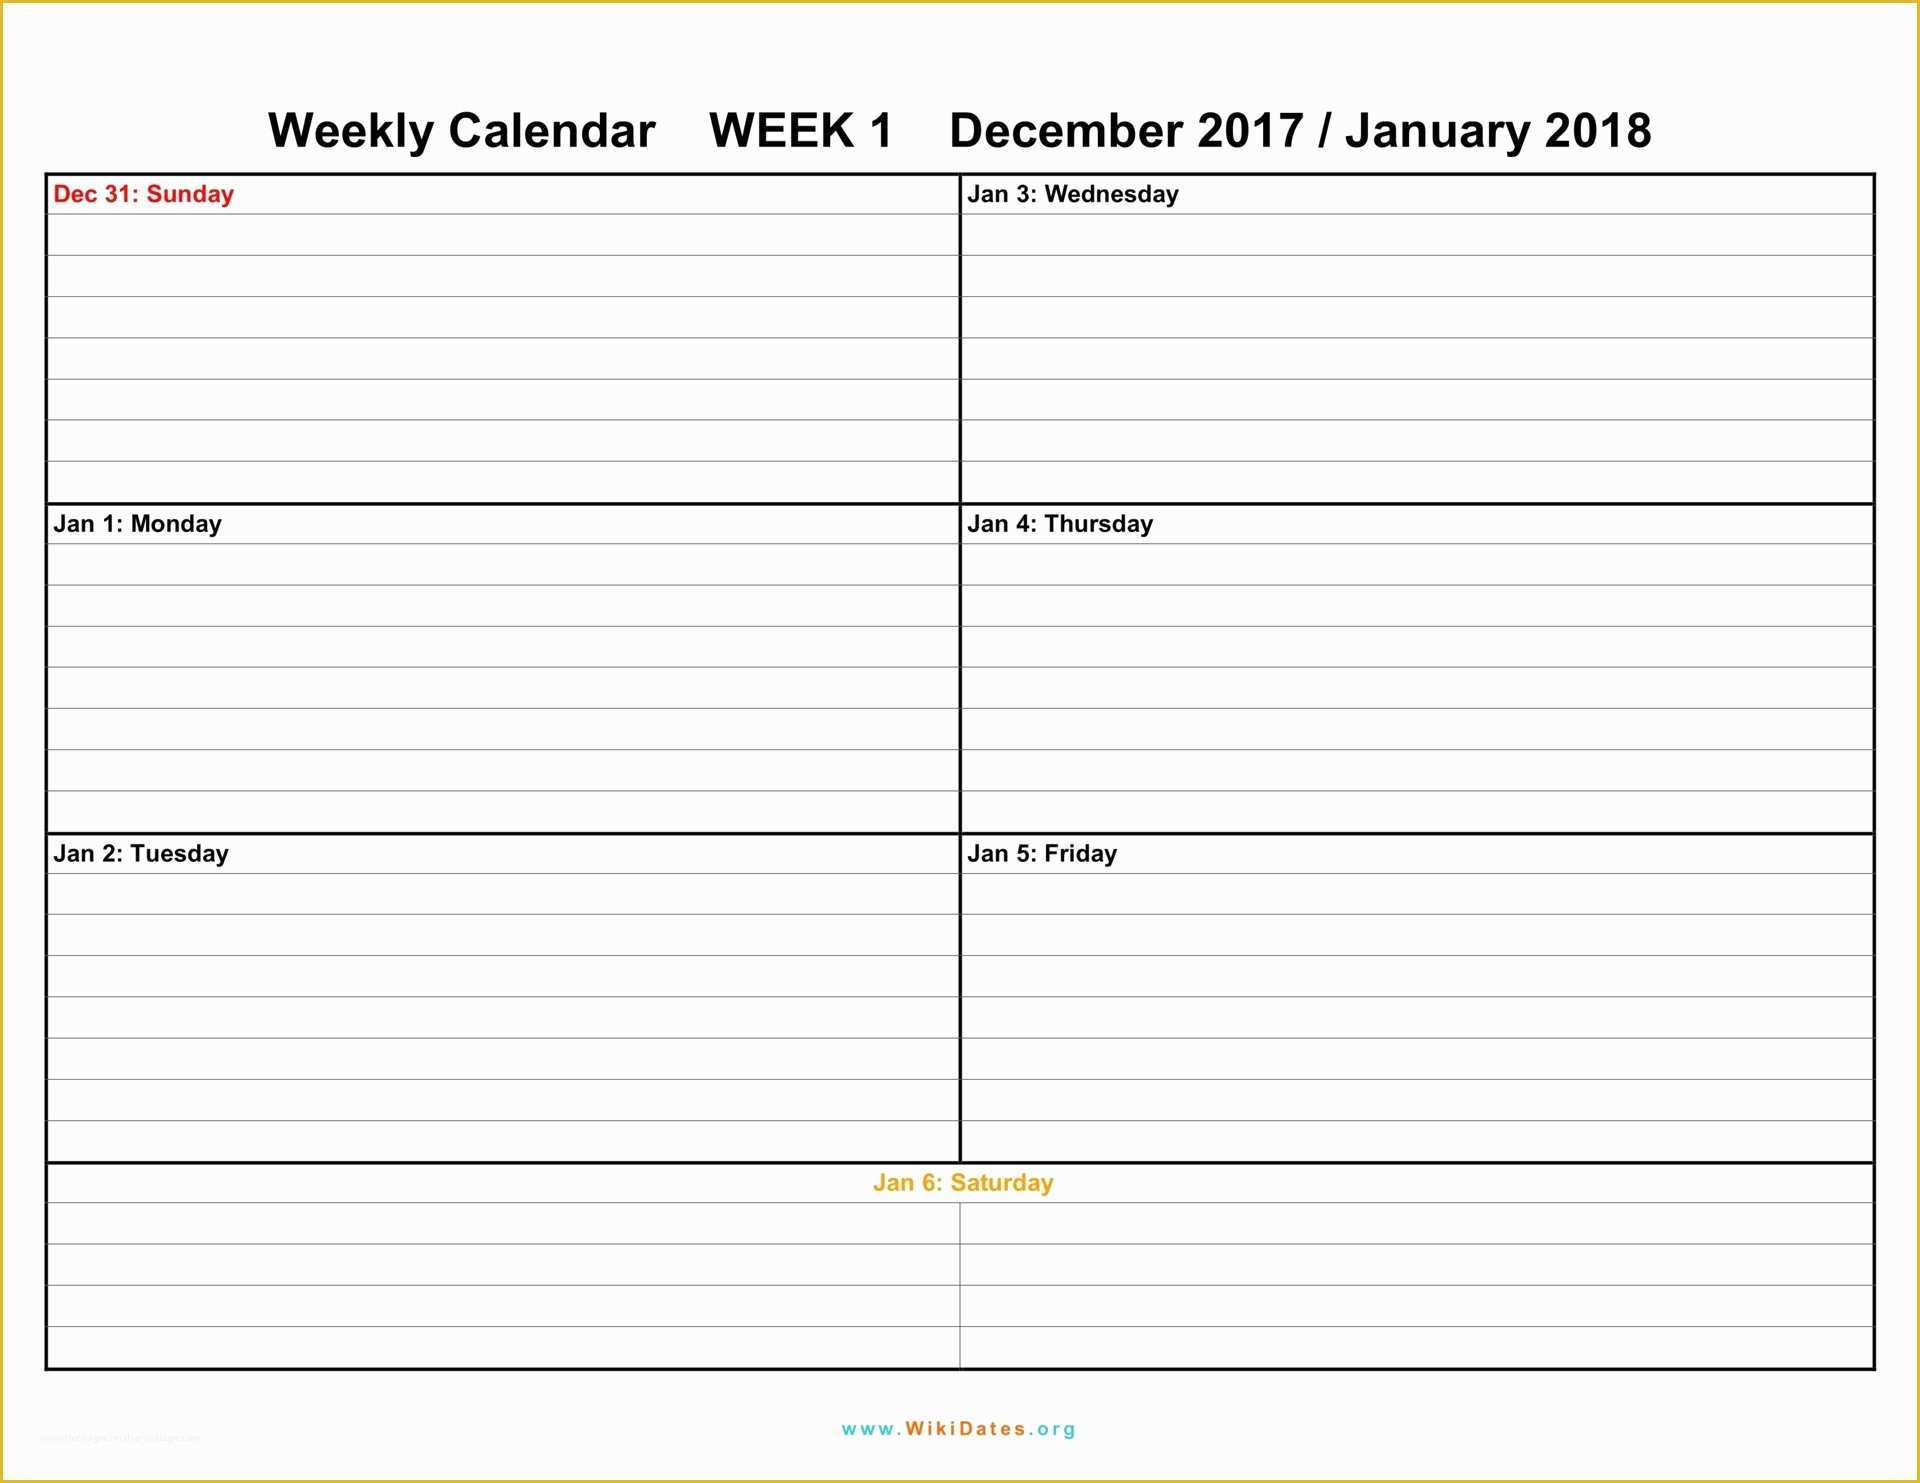 Free Weekly Calendar Template Of Weekly Calendar Download Weekly Calendar 2017 and 2018